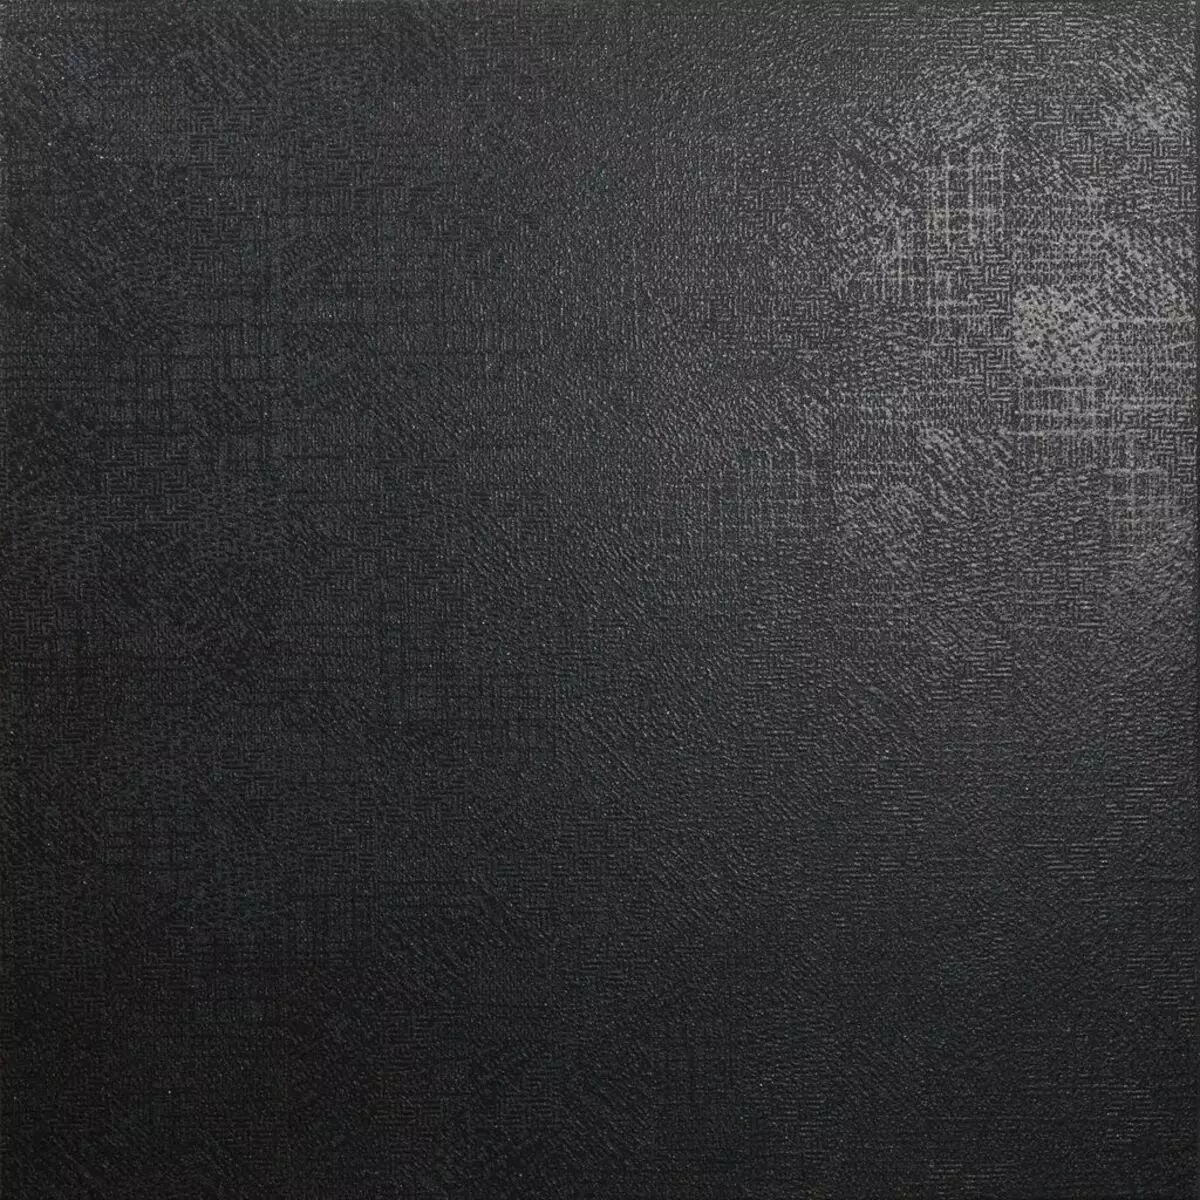 Черная матовая стена. Formula negro кг 60х60. Cuzco 60х60 пол. Керамогранит 600 600 глянец графит. Плитка черная матовая.